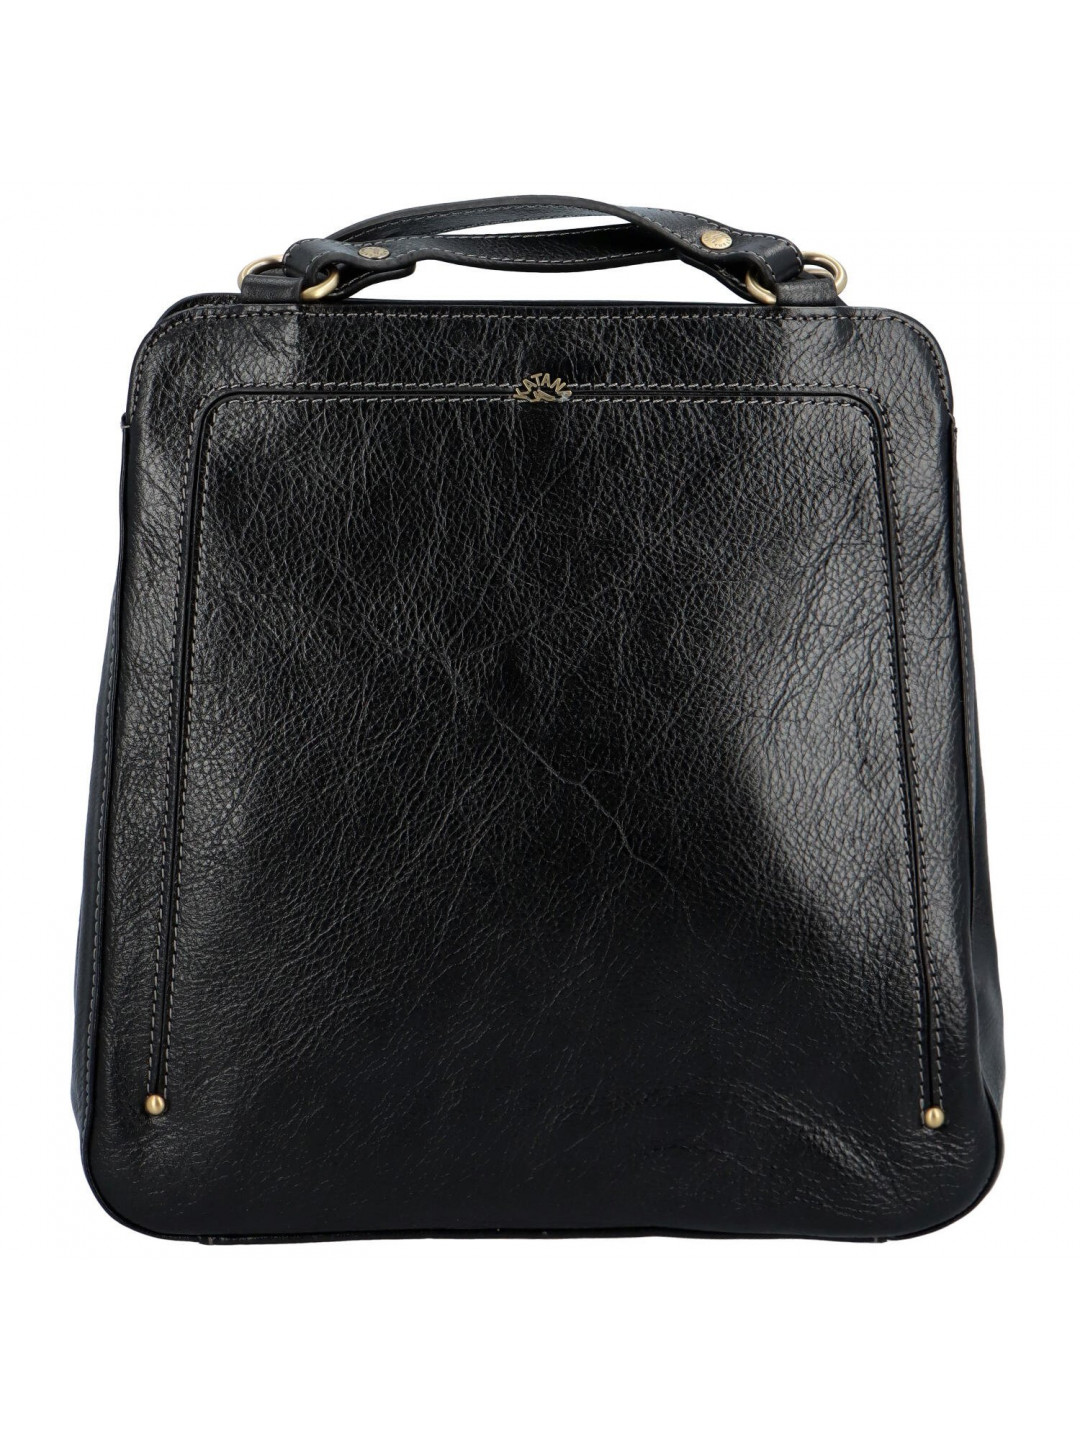 Luxusní dámský kožený kabelko batoh Katana Nice černá